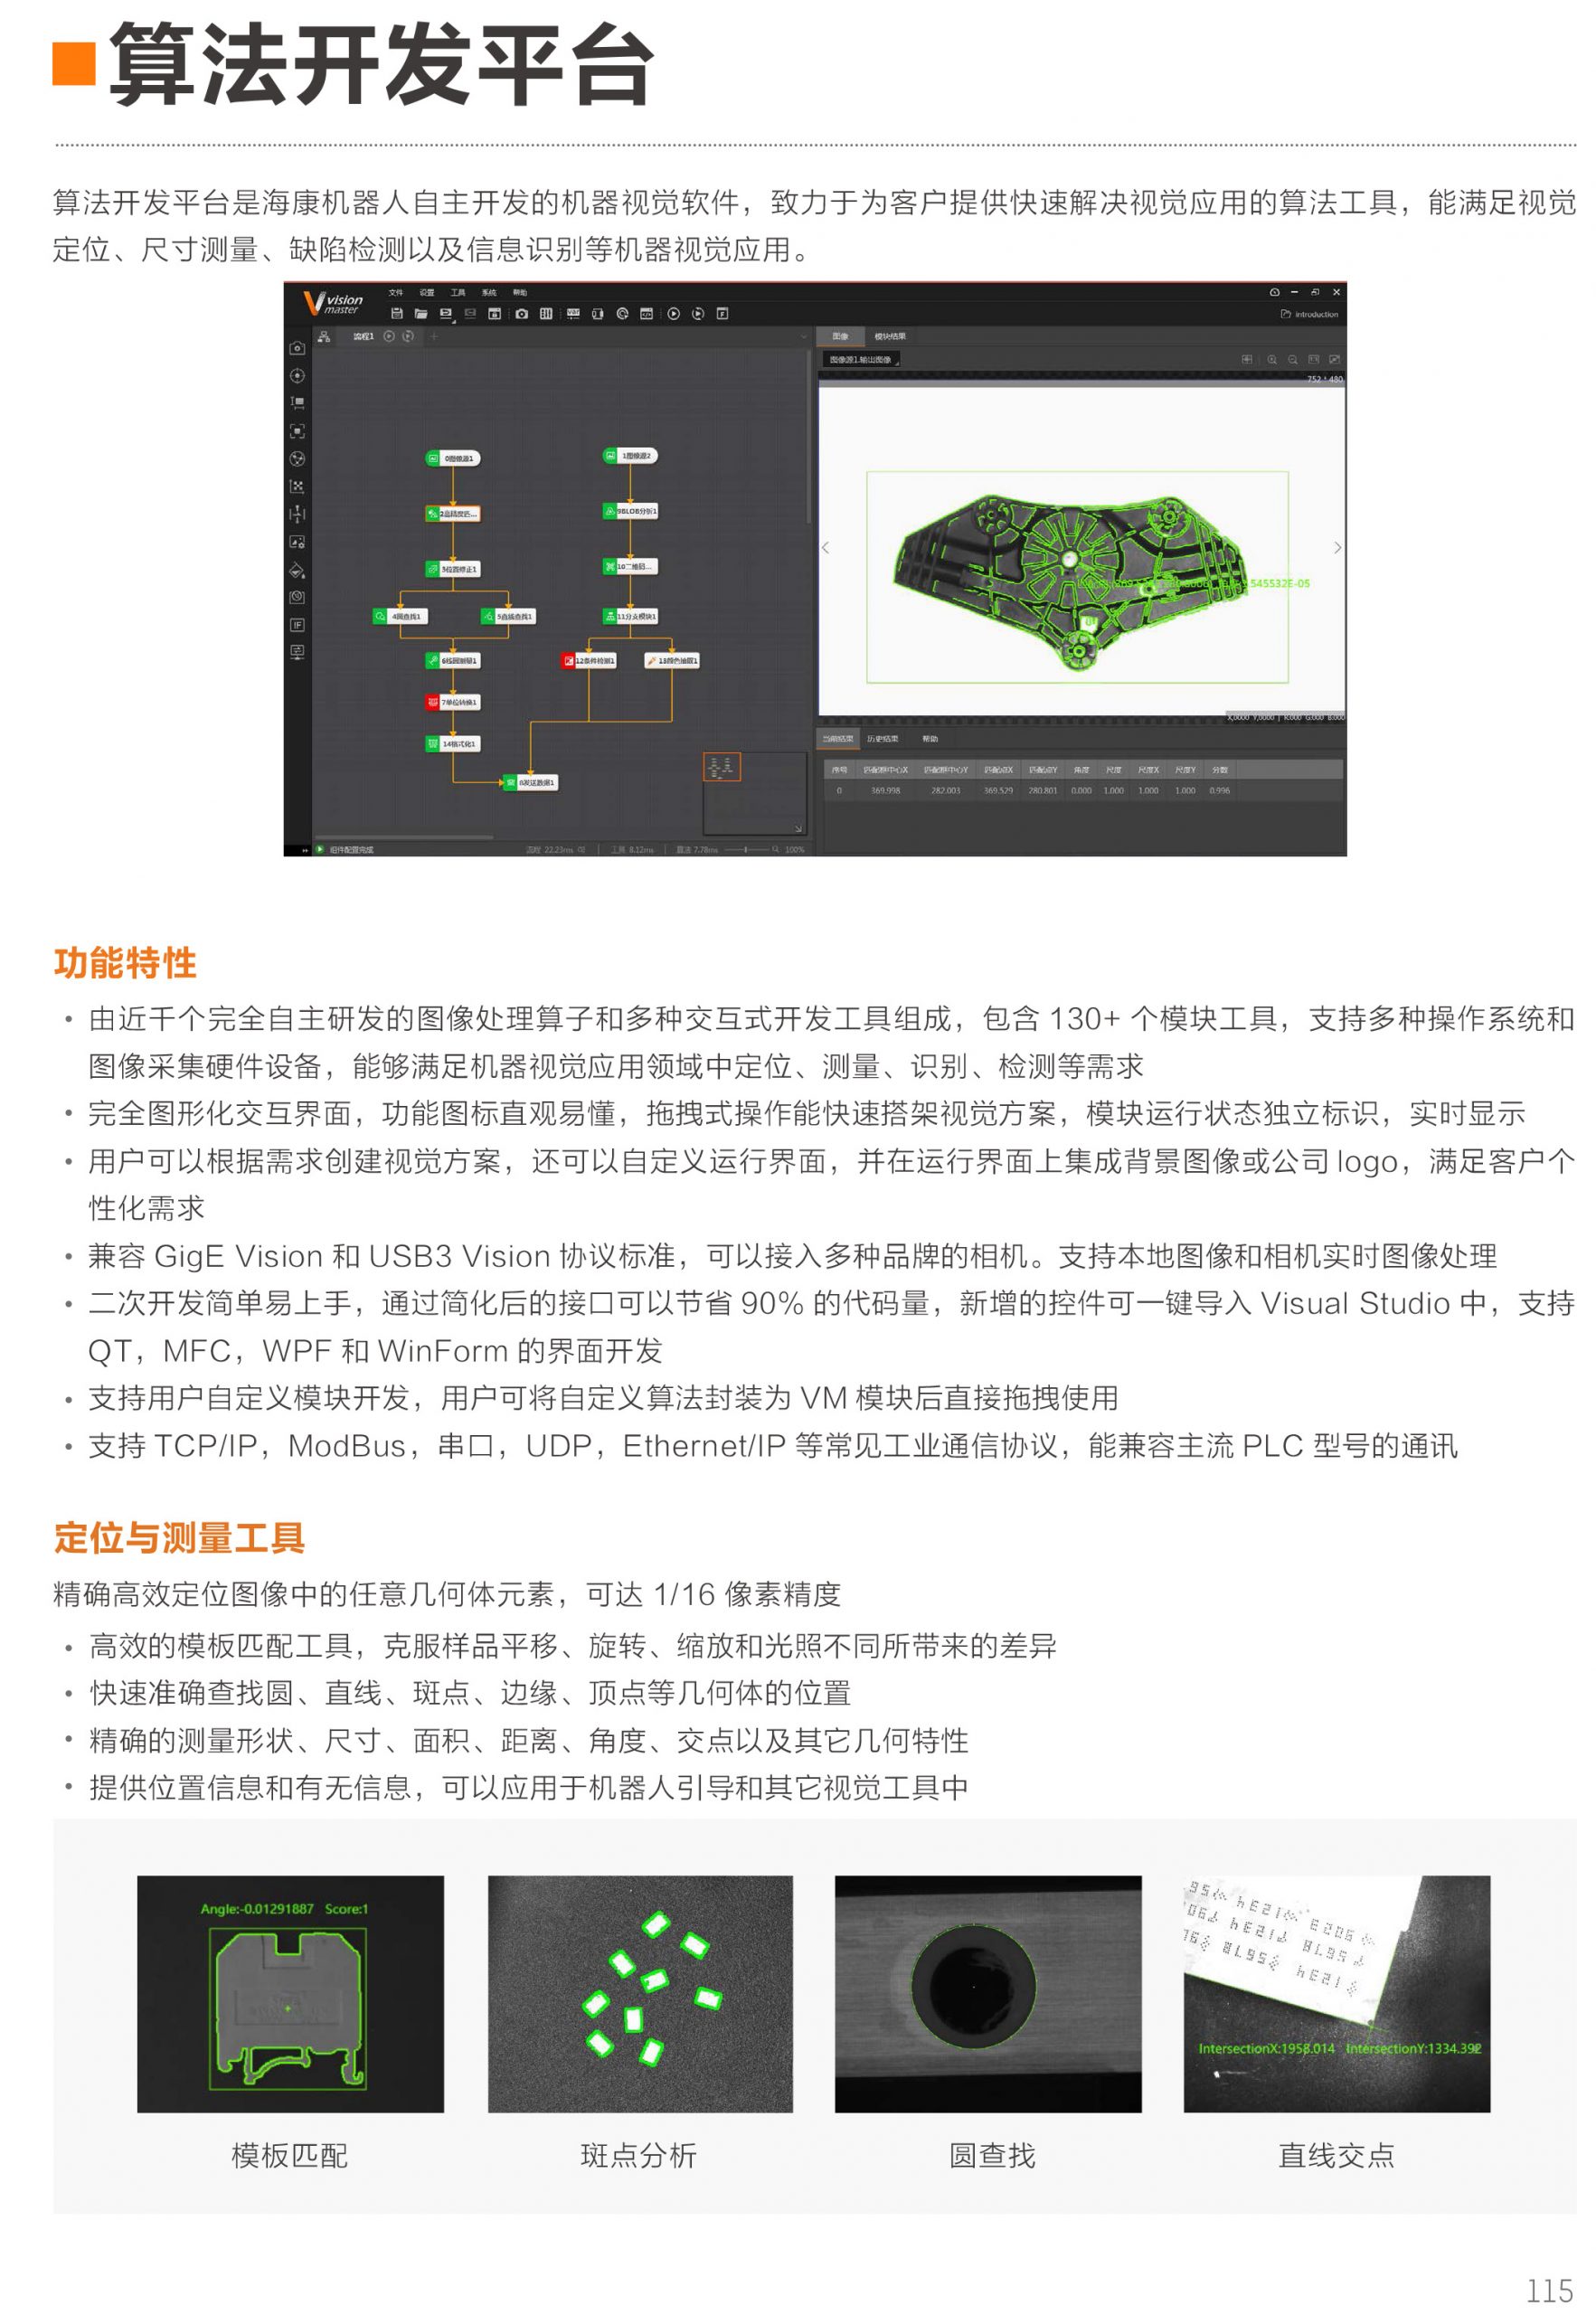 海康威视iMVS-VM-6100 机器视觉平台算法平台加密狗海康算法平台VisionMaster-捷利得(北京)自动化科技有限公司